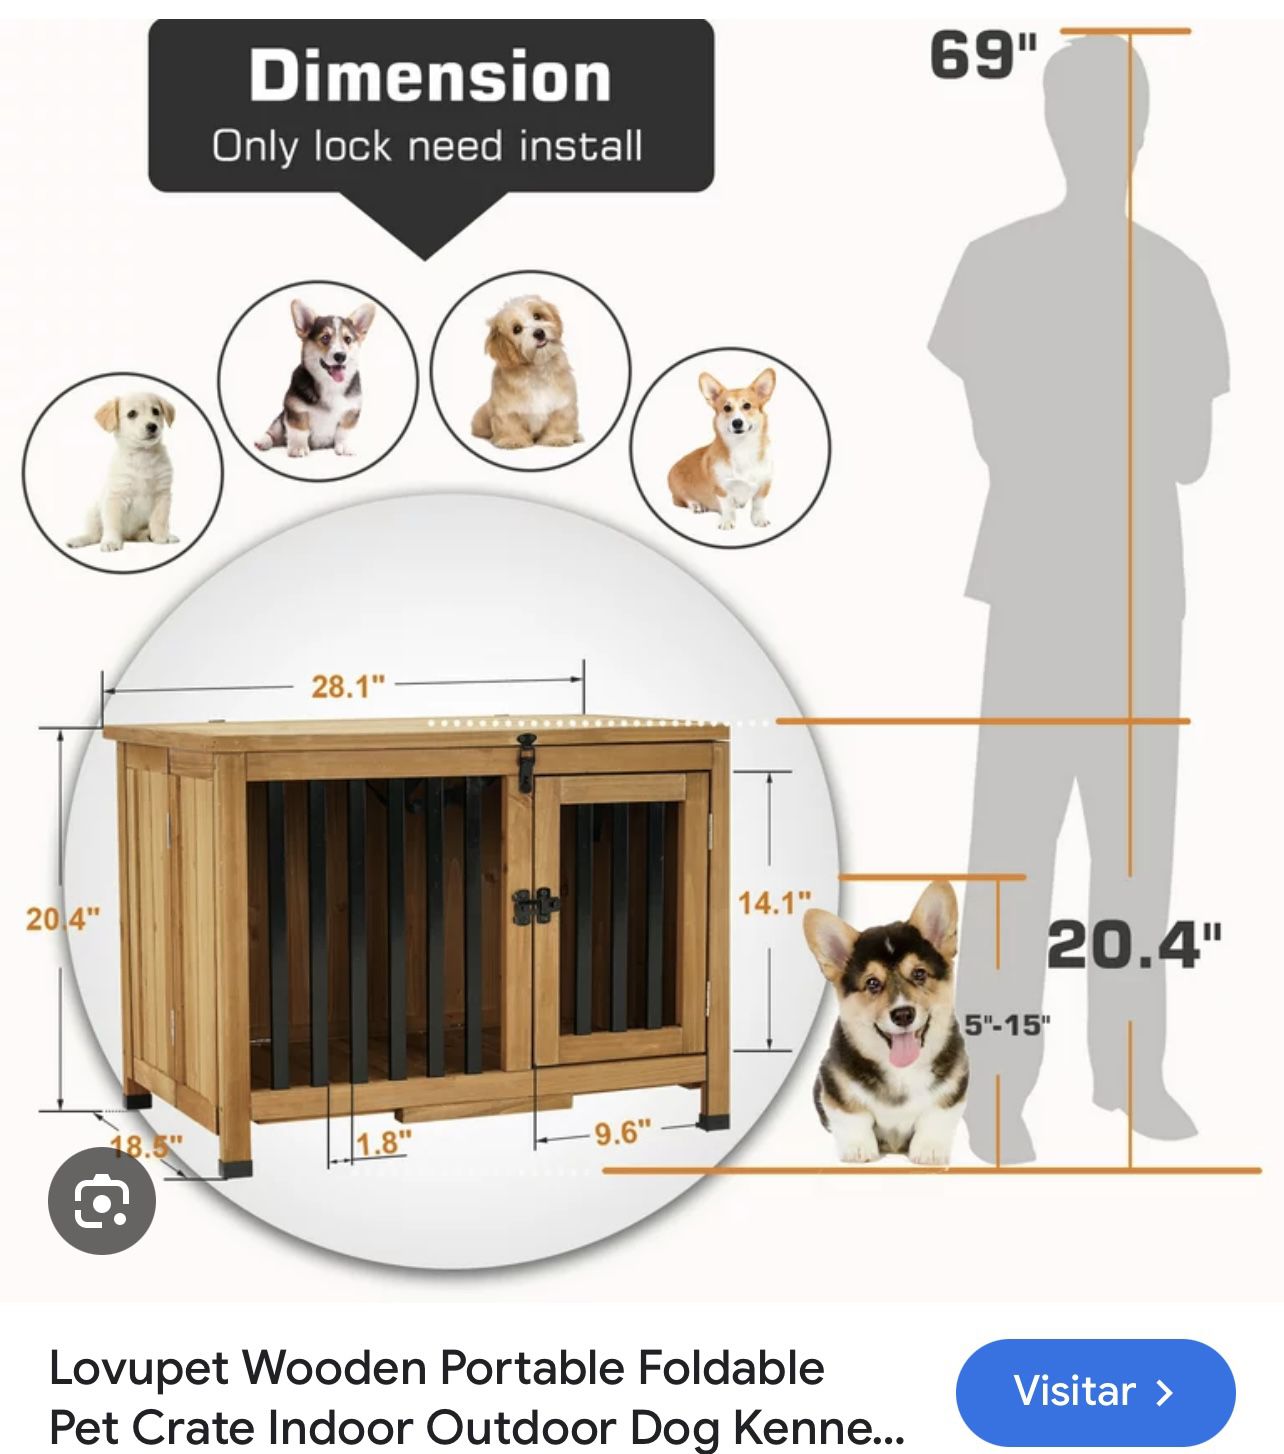 Pet Crate Indoor Outdoor Dog Kenne